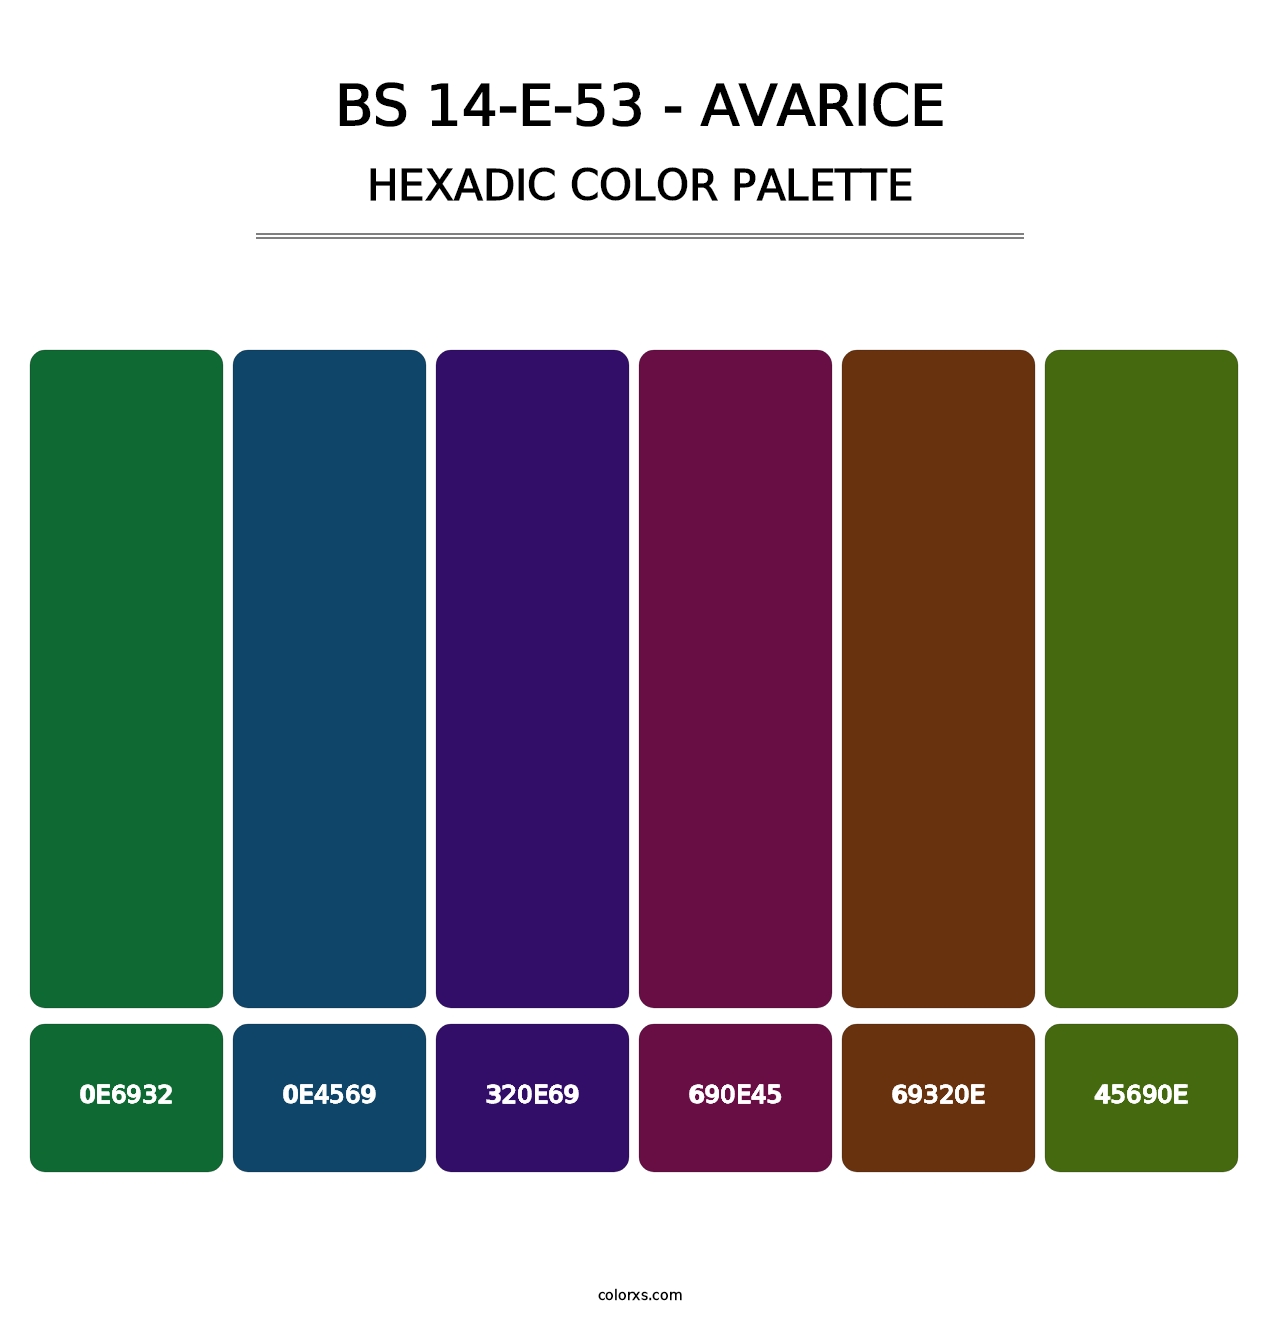 BS 14-E-53 - Avarice - Hexadic Color Palette